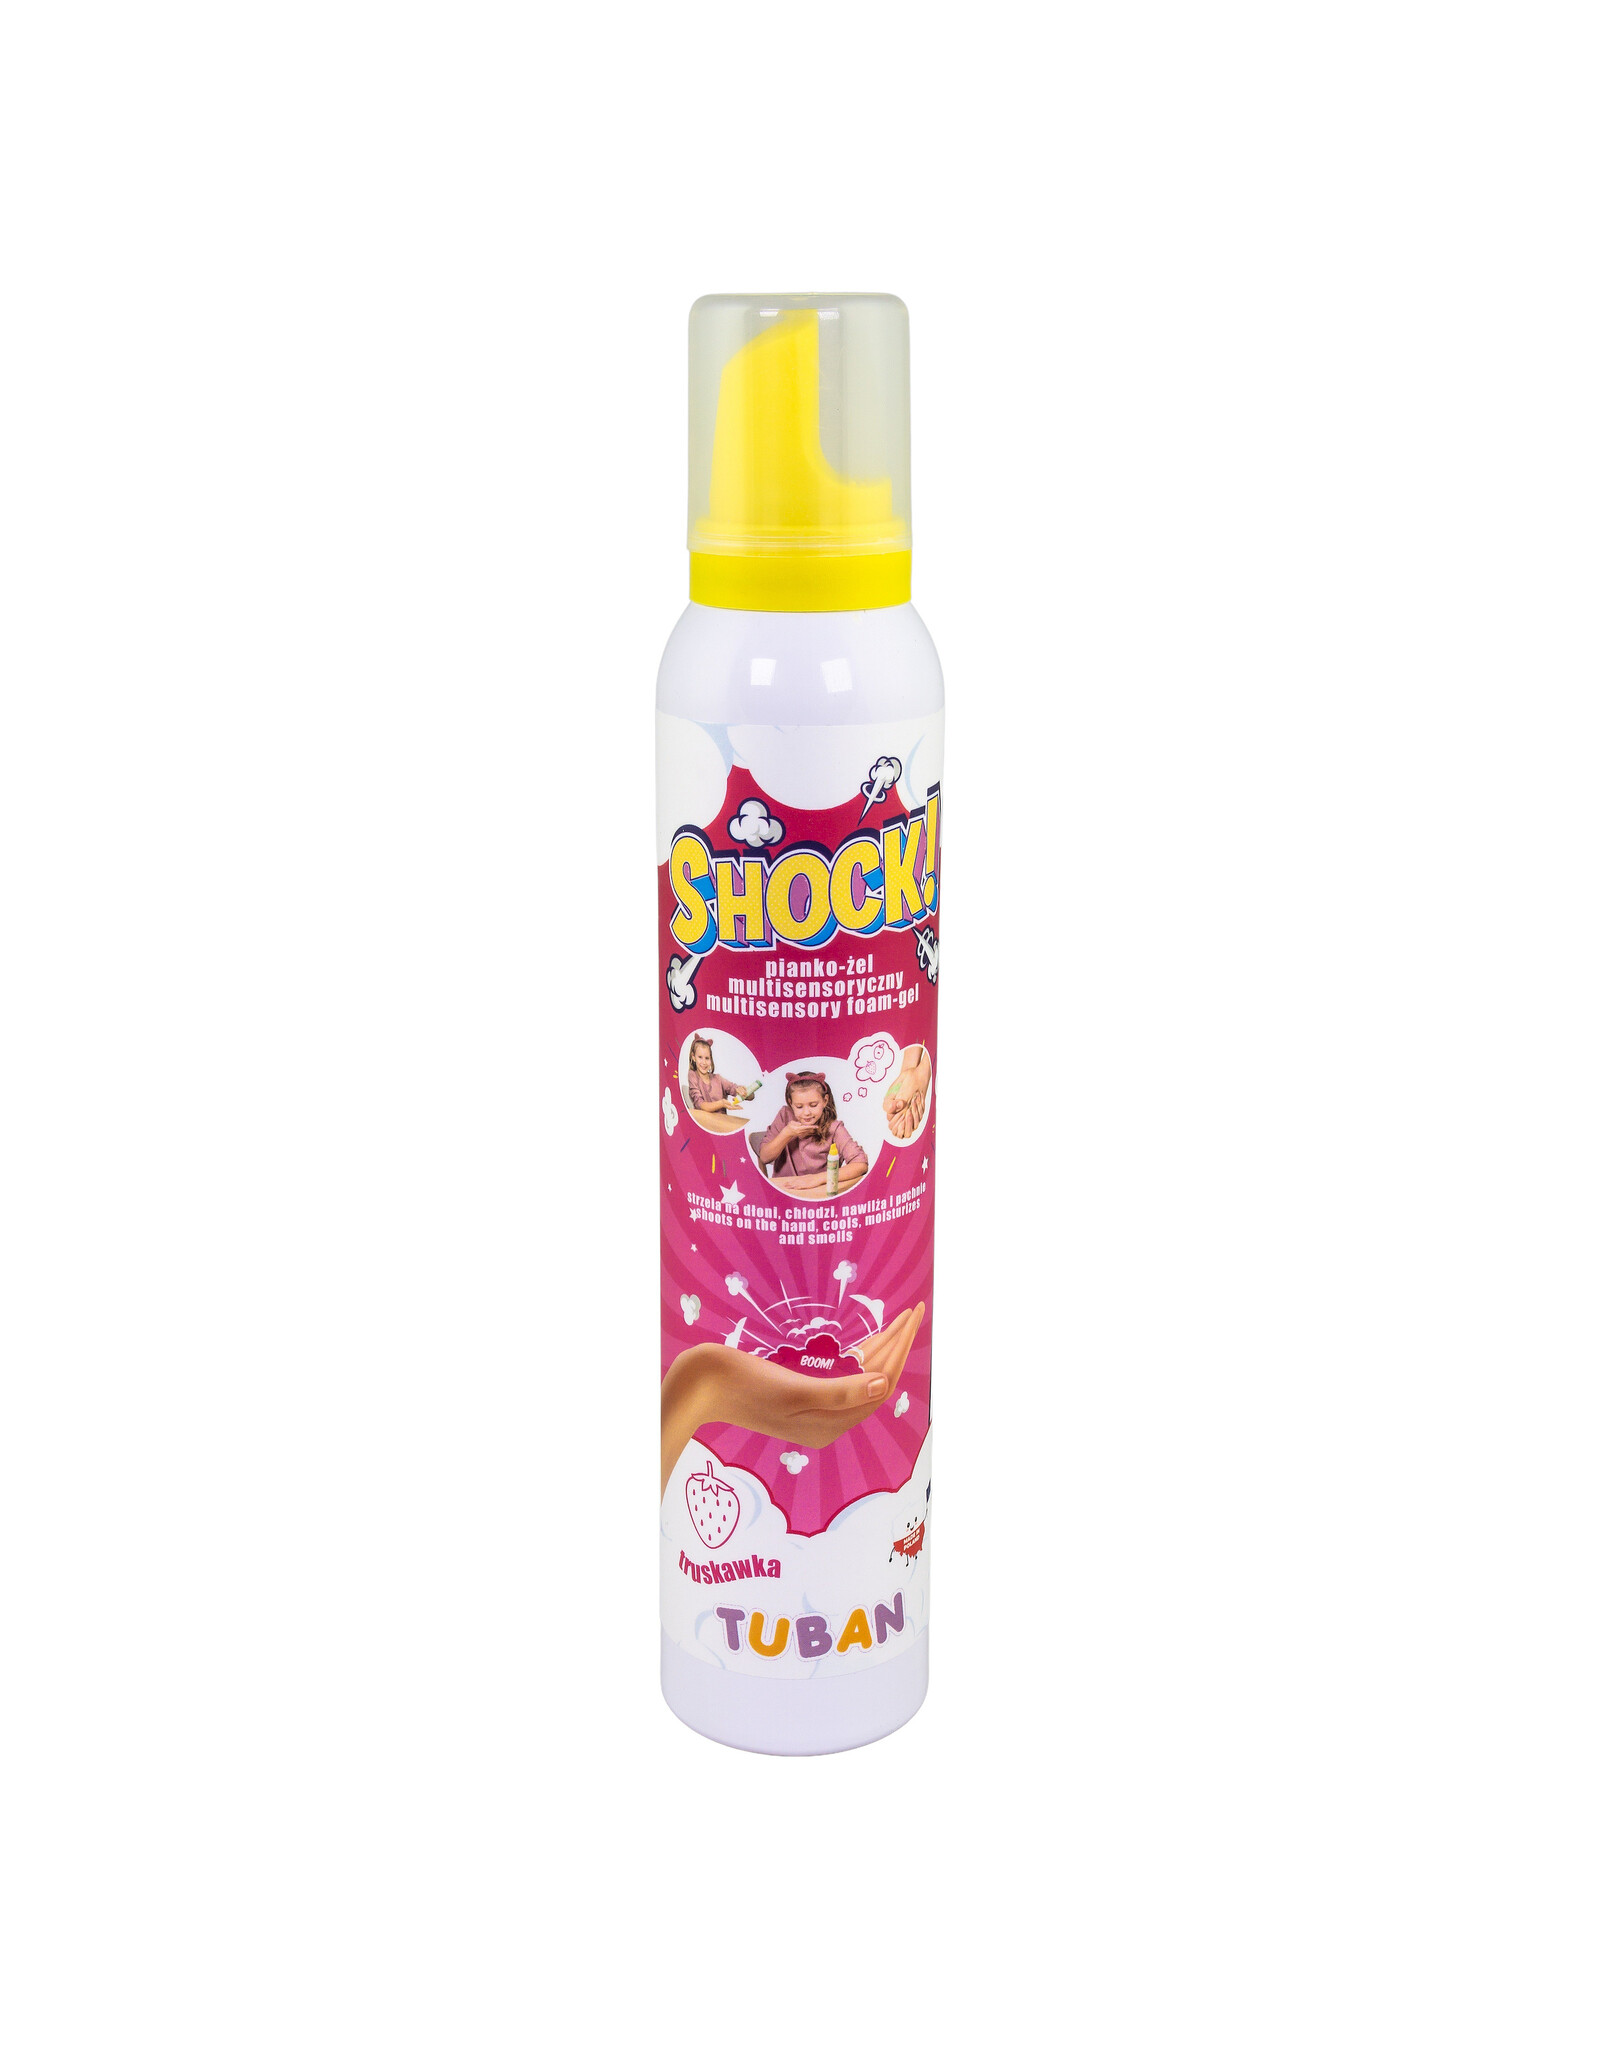 Tuban Tuban - Shock! - 200ml - multisensory foam-gel - strawberry